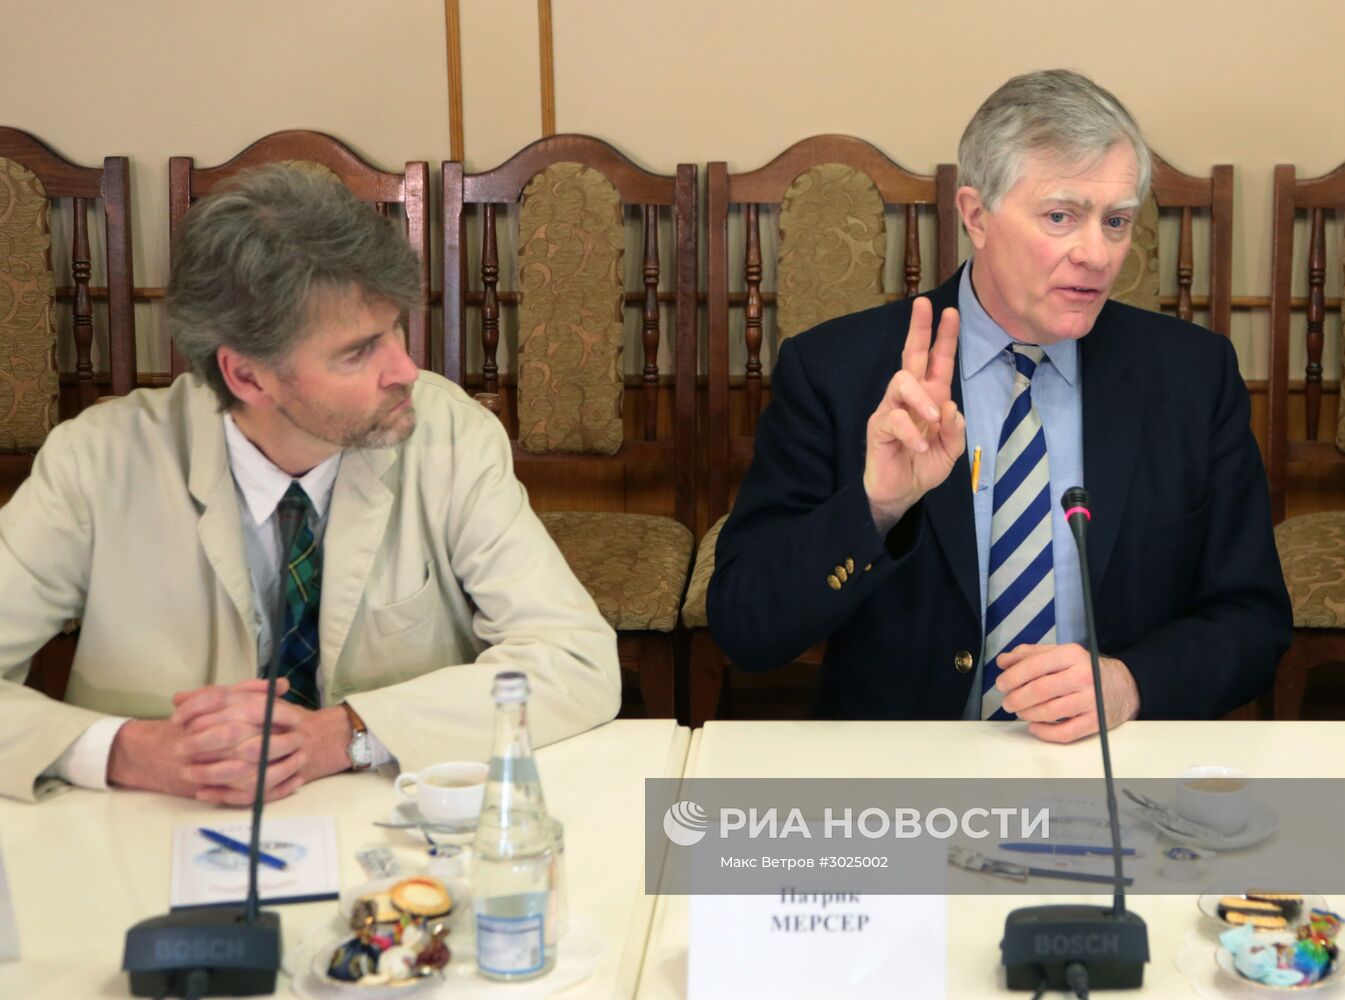 Визит делегации ученых из Бристольского университета в Крым